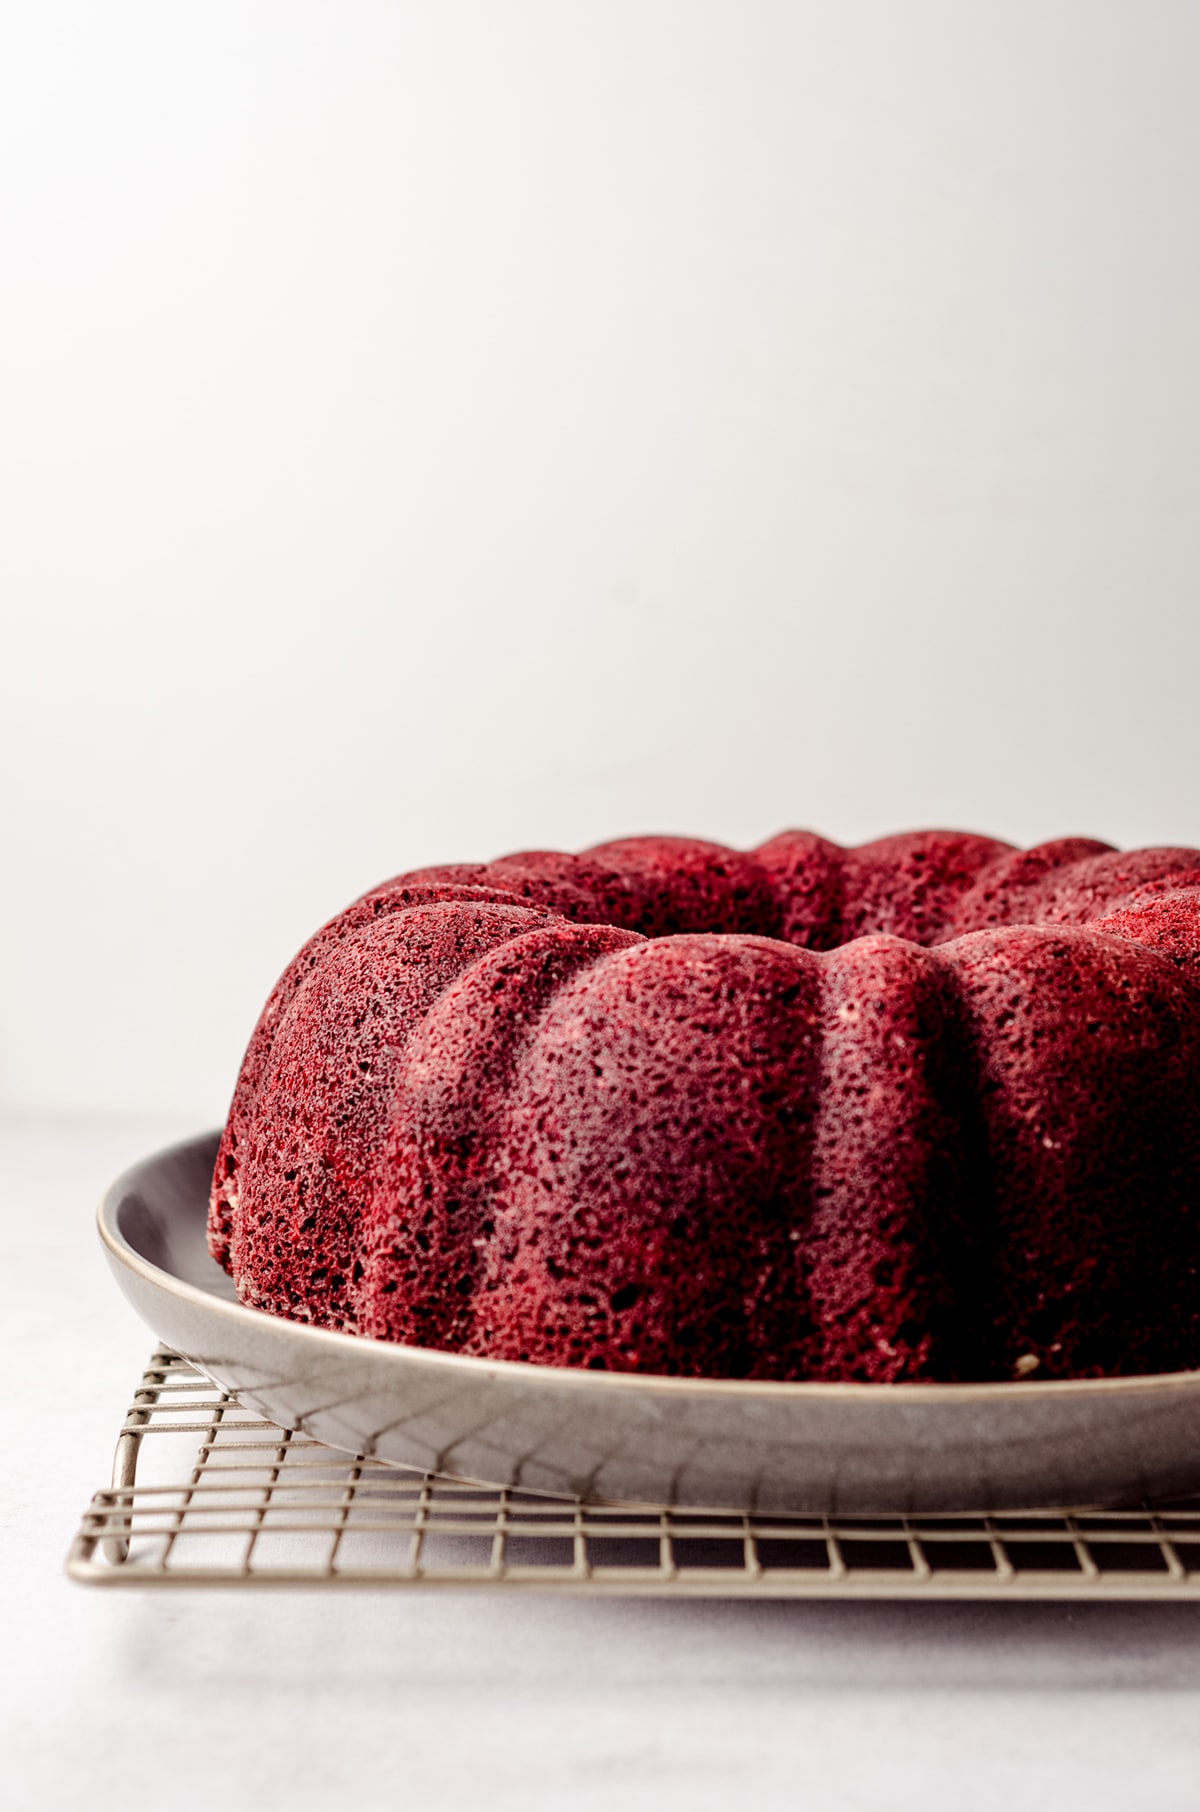 red velvet bundt cake on a plate